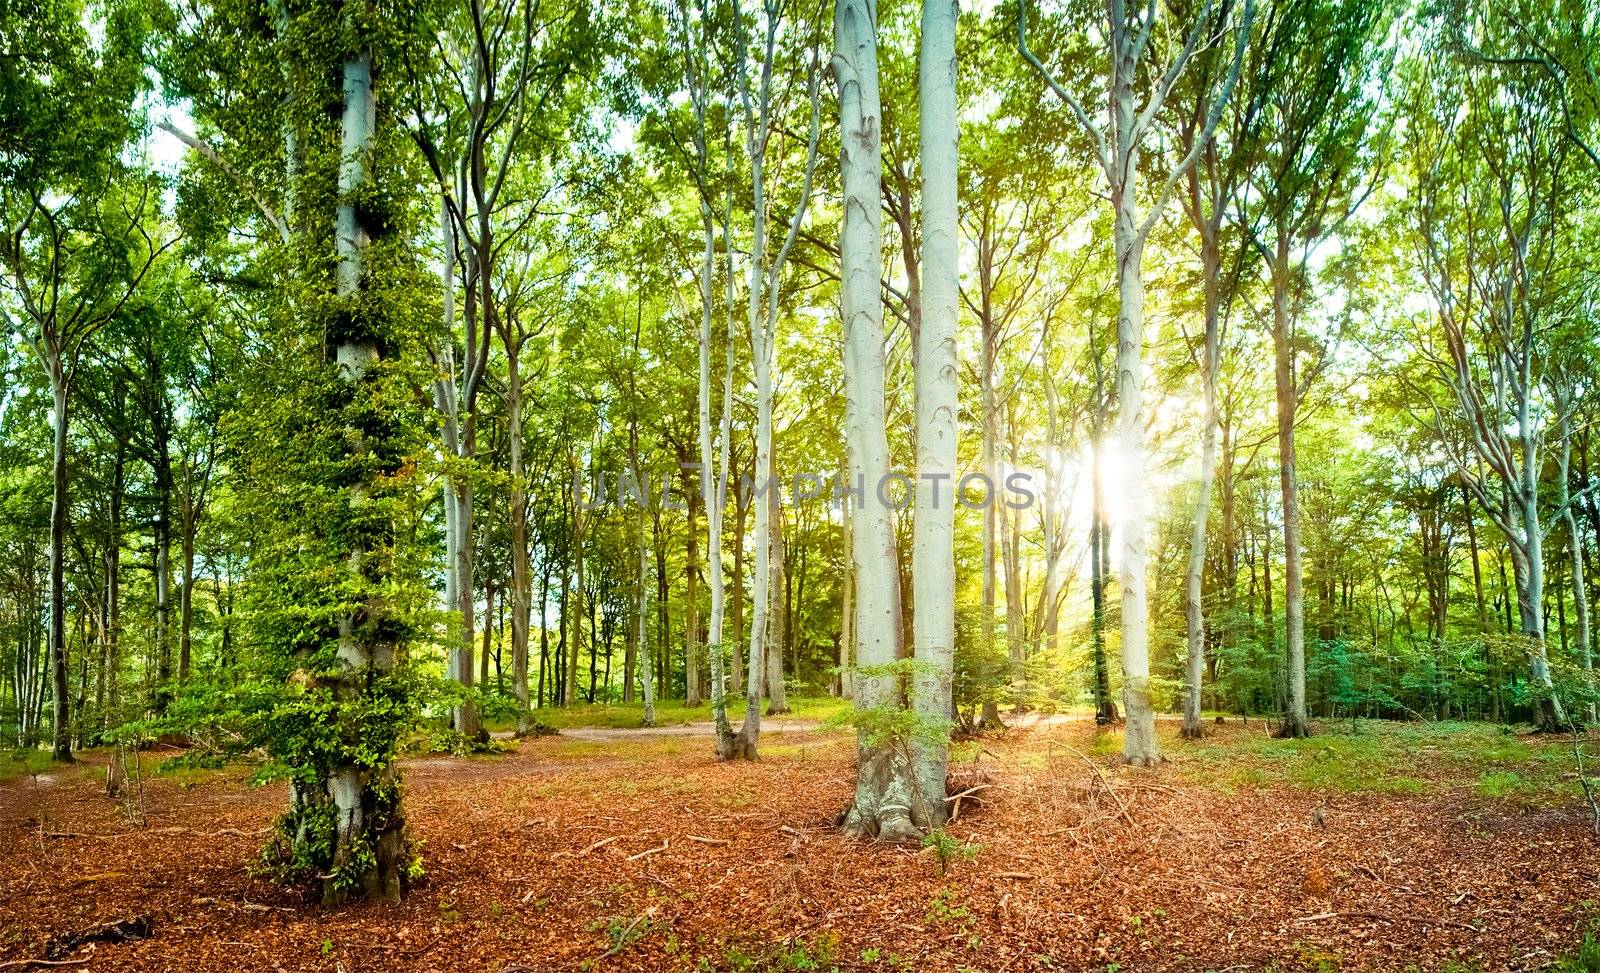 beech forest by filmstroem